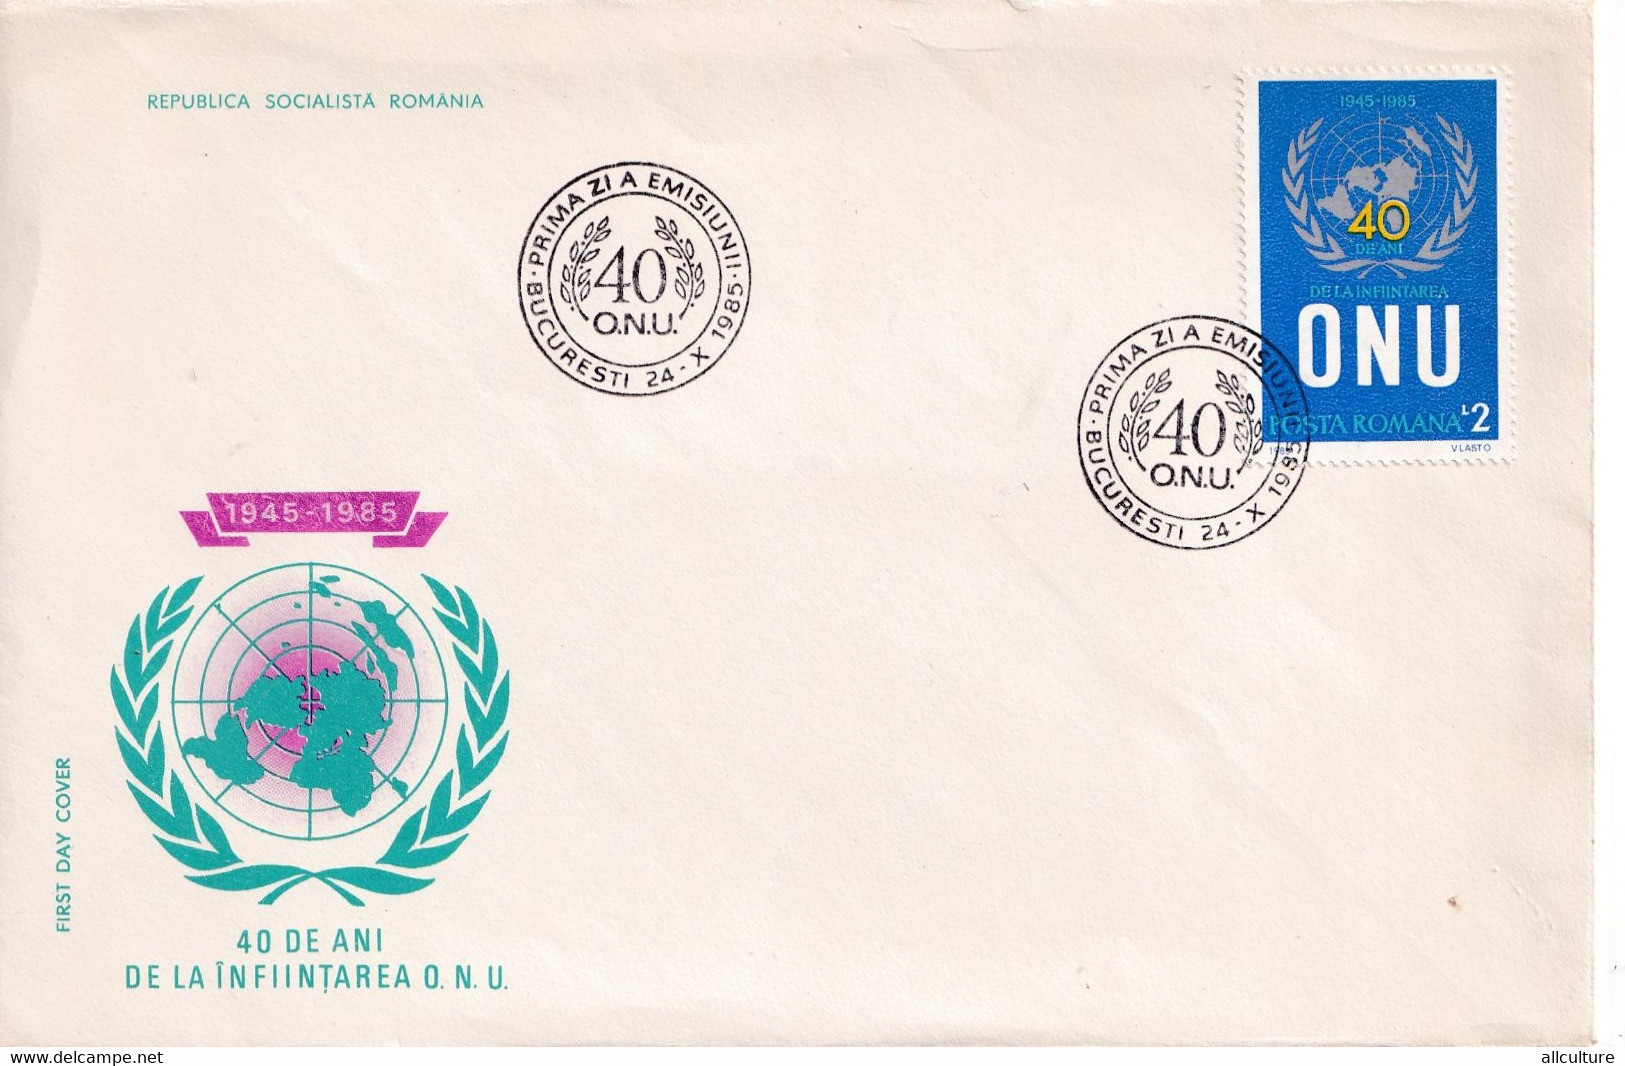 A2719 - 40 Ani De La Infiintarea O.N.U 1945-1985 , Bucuresti 1985 Republica Socialista Romania FDC - ONU